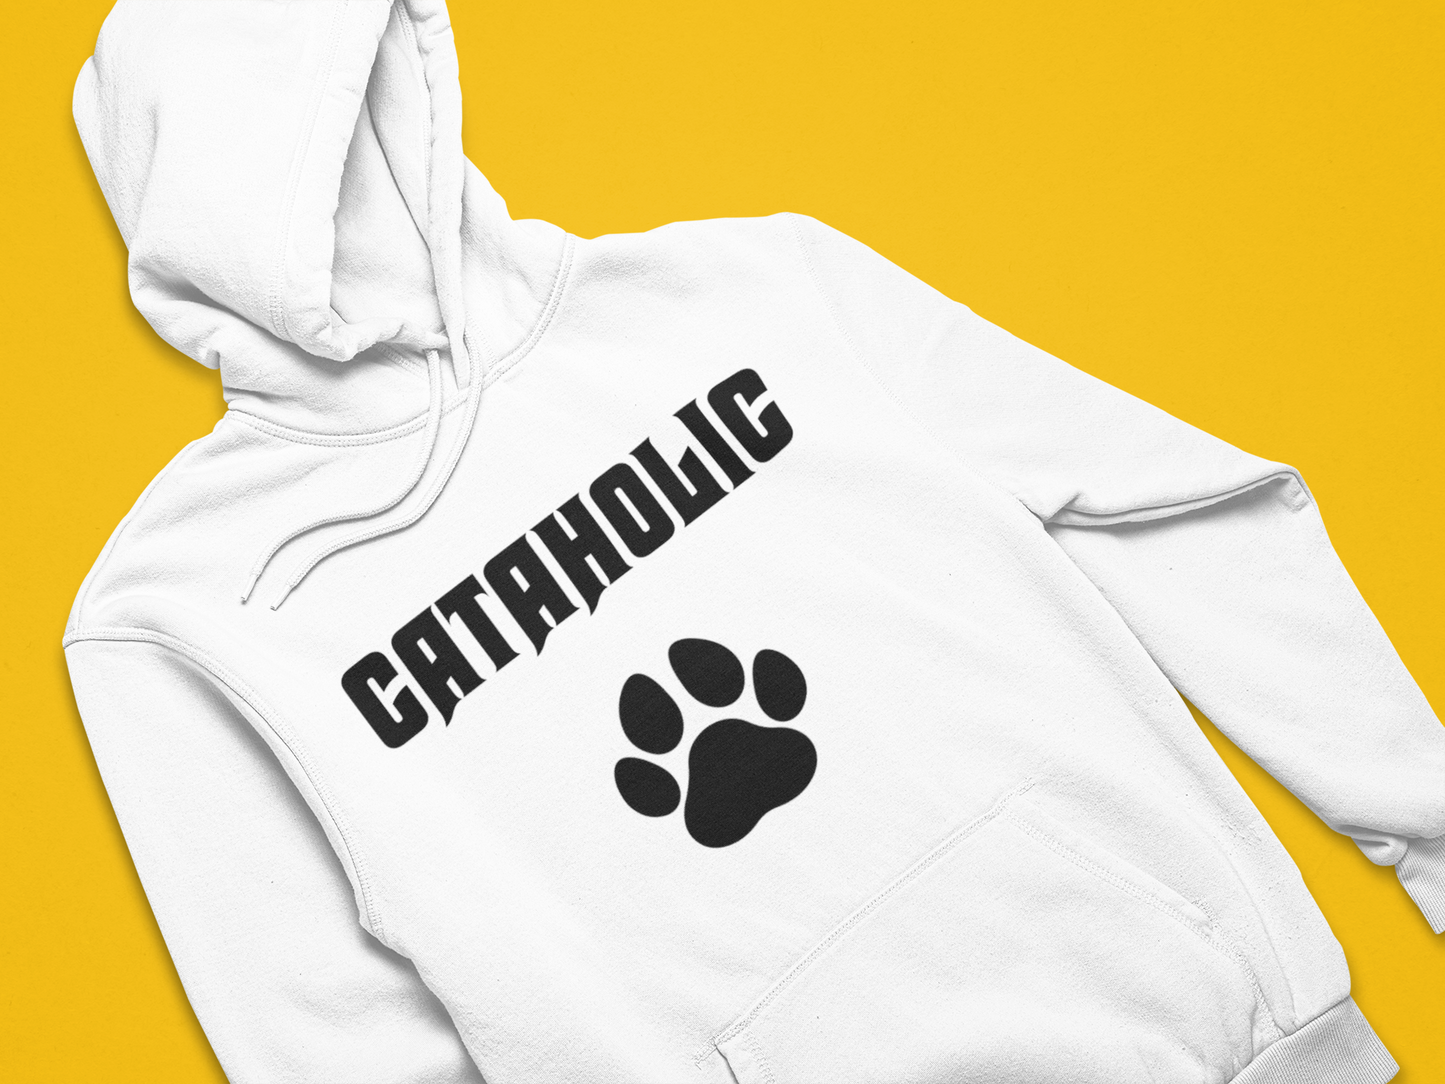 Cataholic / Kedikolik - TontikShop Köpek ve Kedi Sahipleri için Kapüşonlu Sweatshirt Serisi - Komik Kedi Köpek Kapüşonlu Sweatshirt